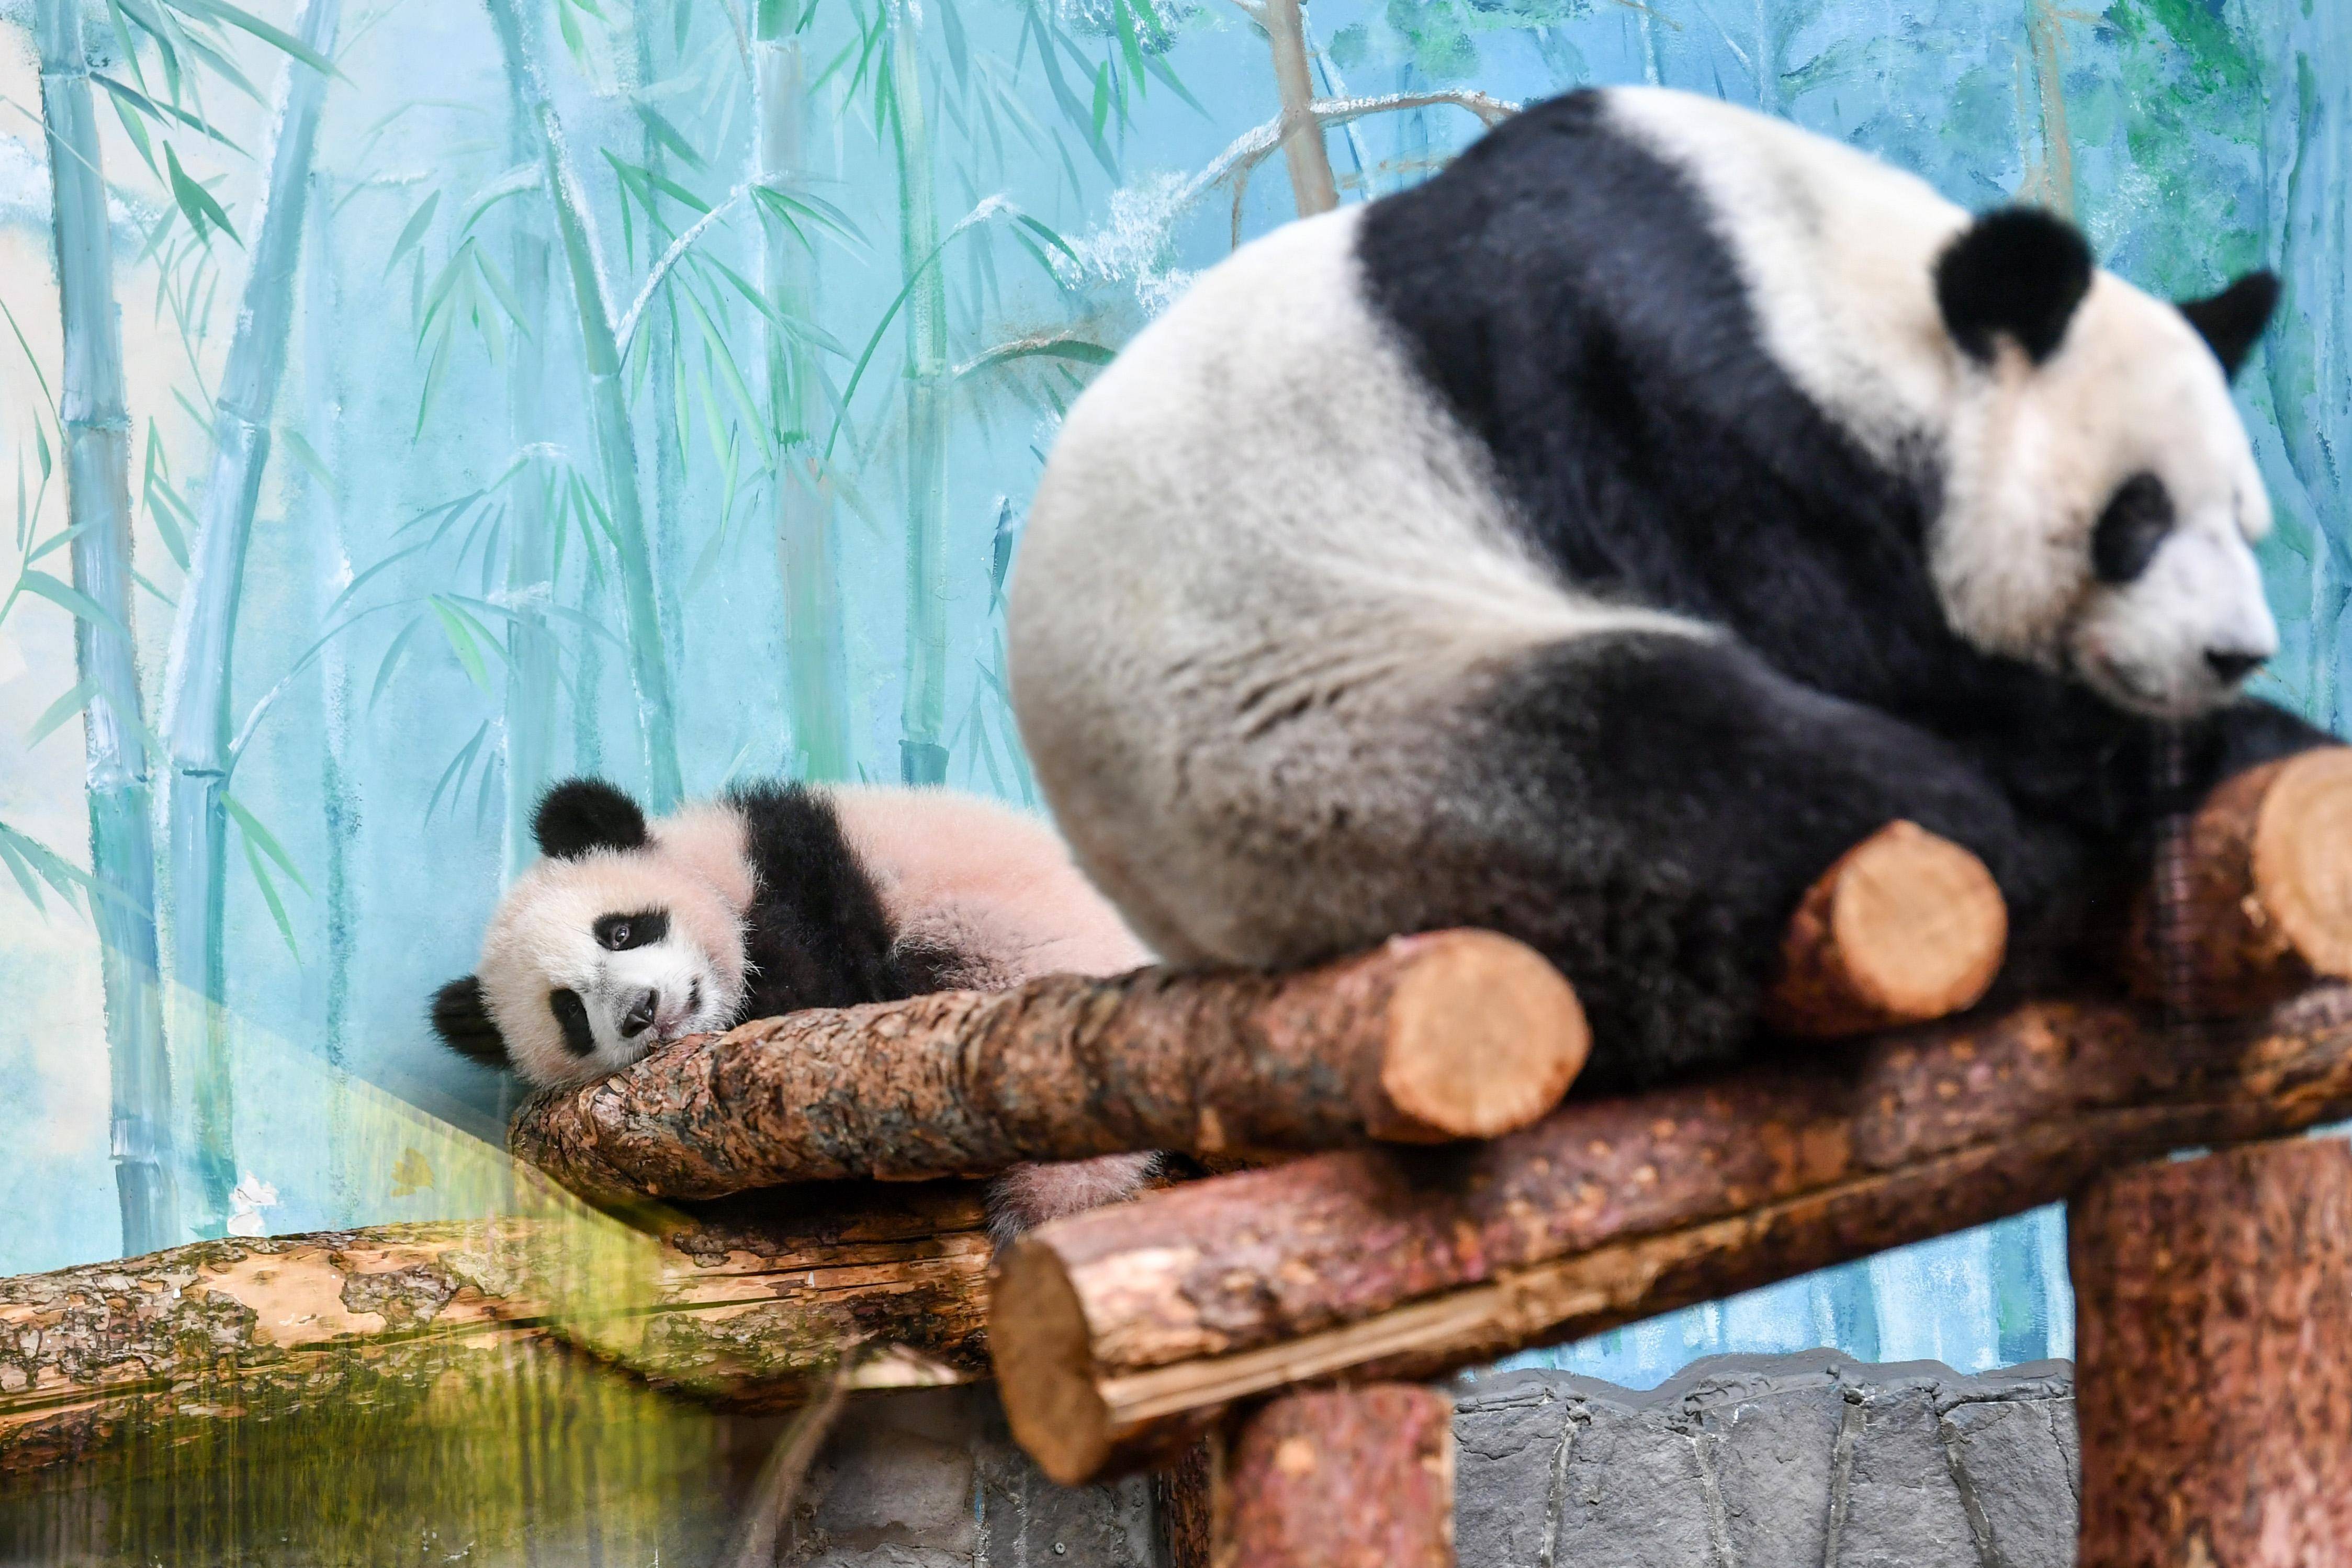 外国熊猫vs中国熊猫图片